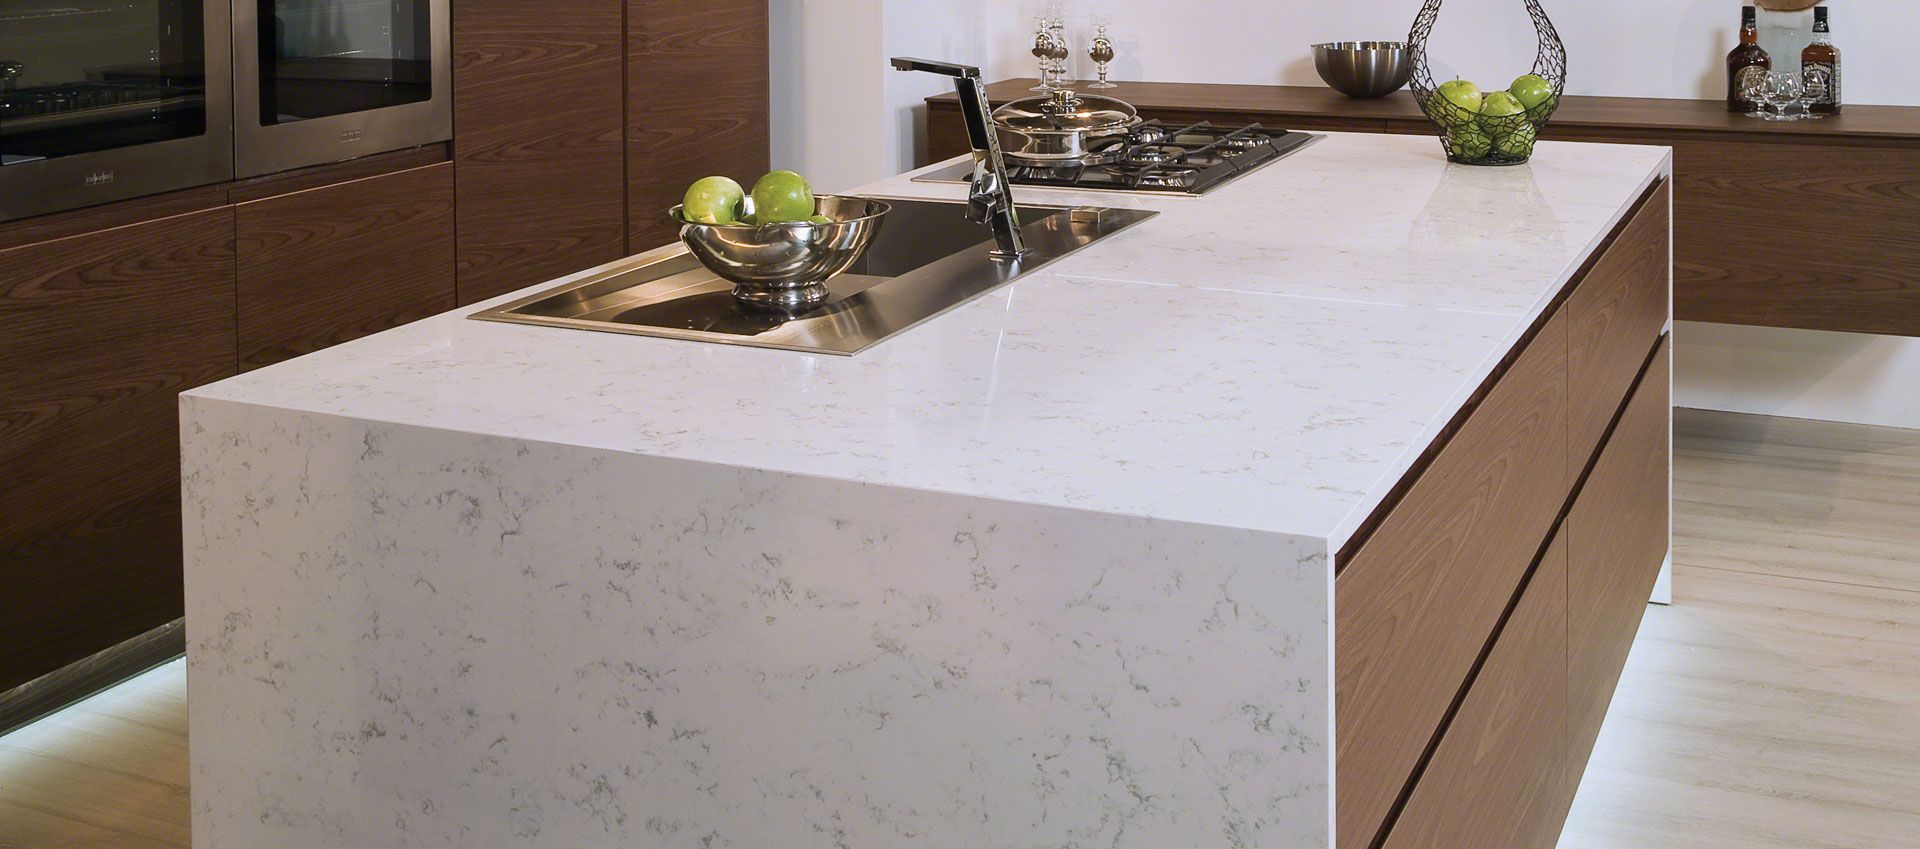 Updated kitchen, quartz countertop, clean lines, updated look